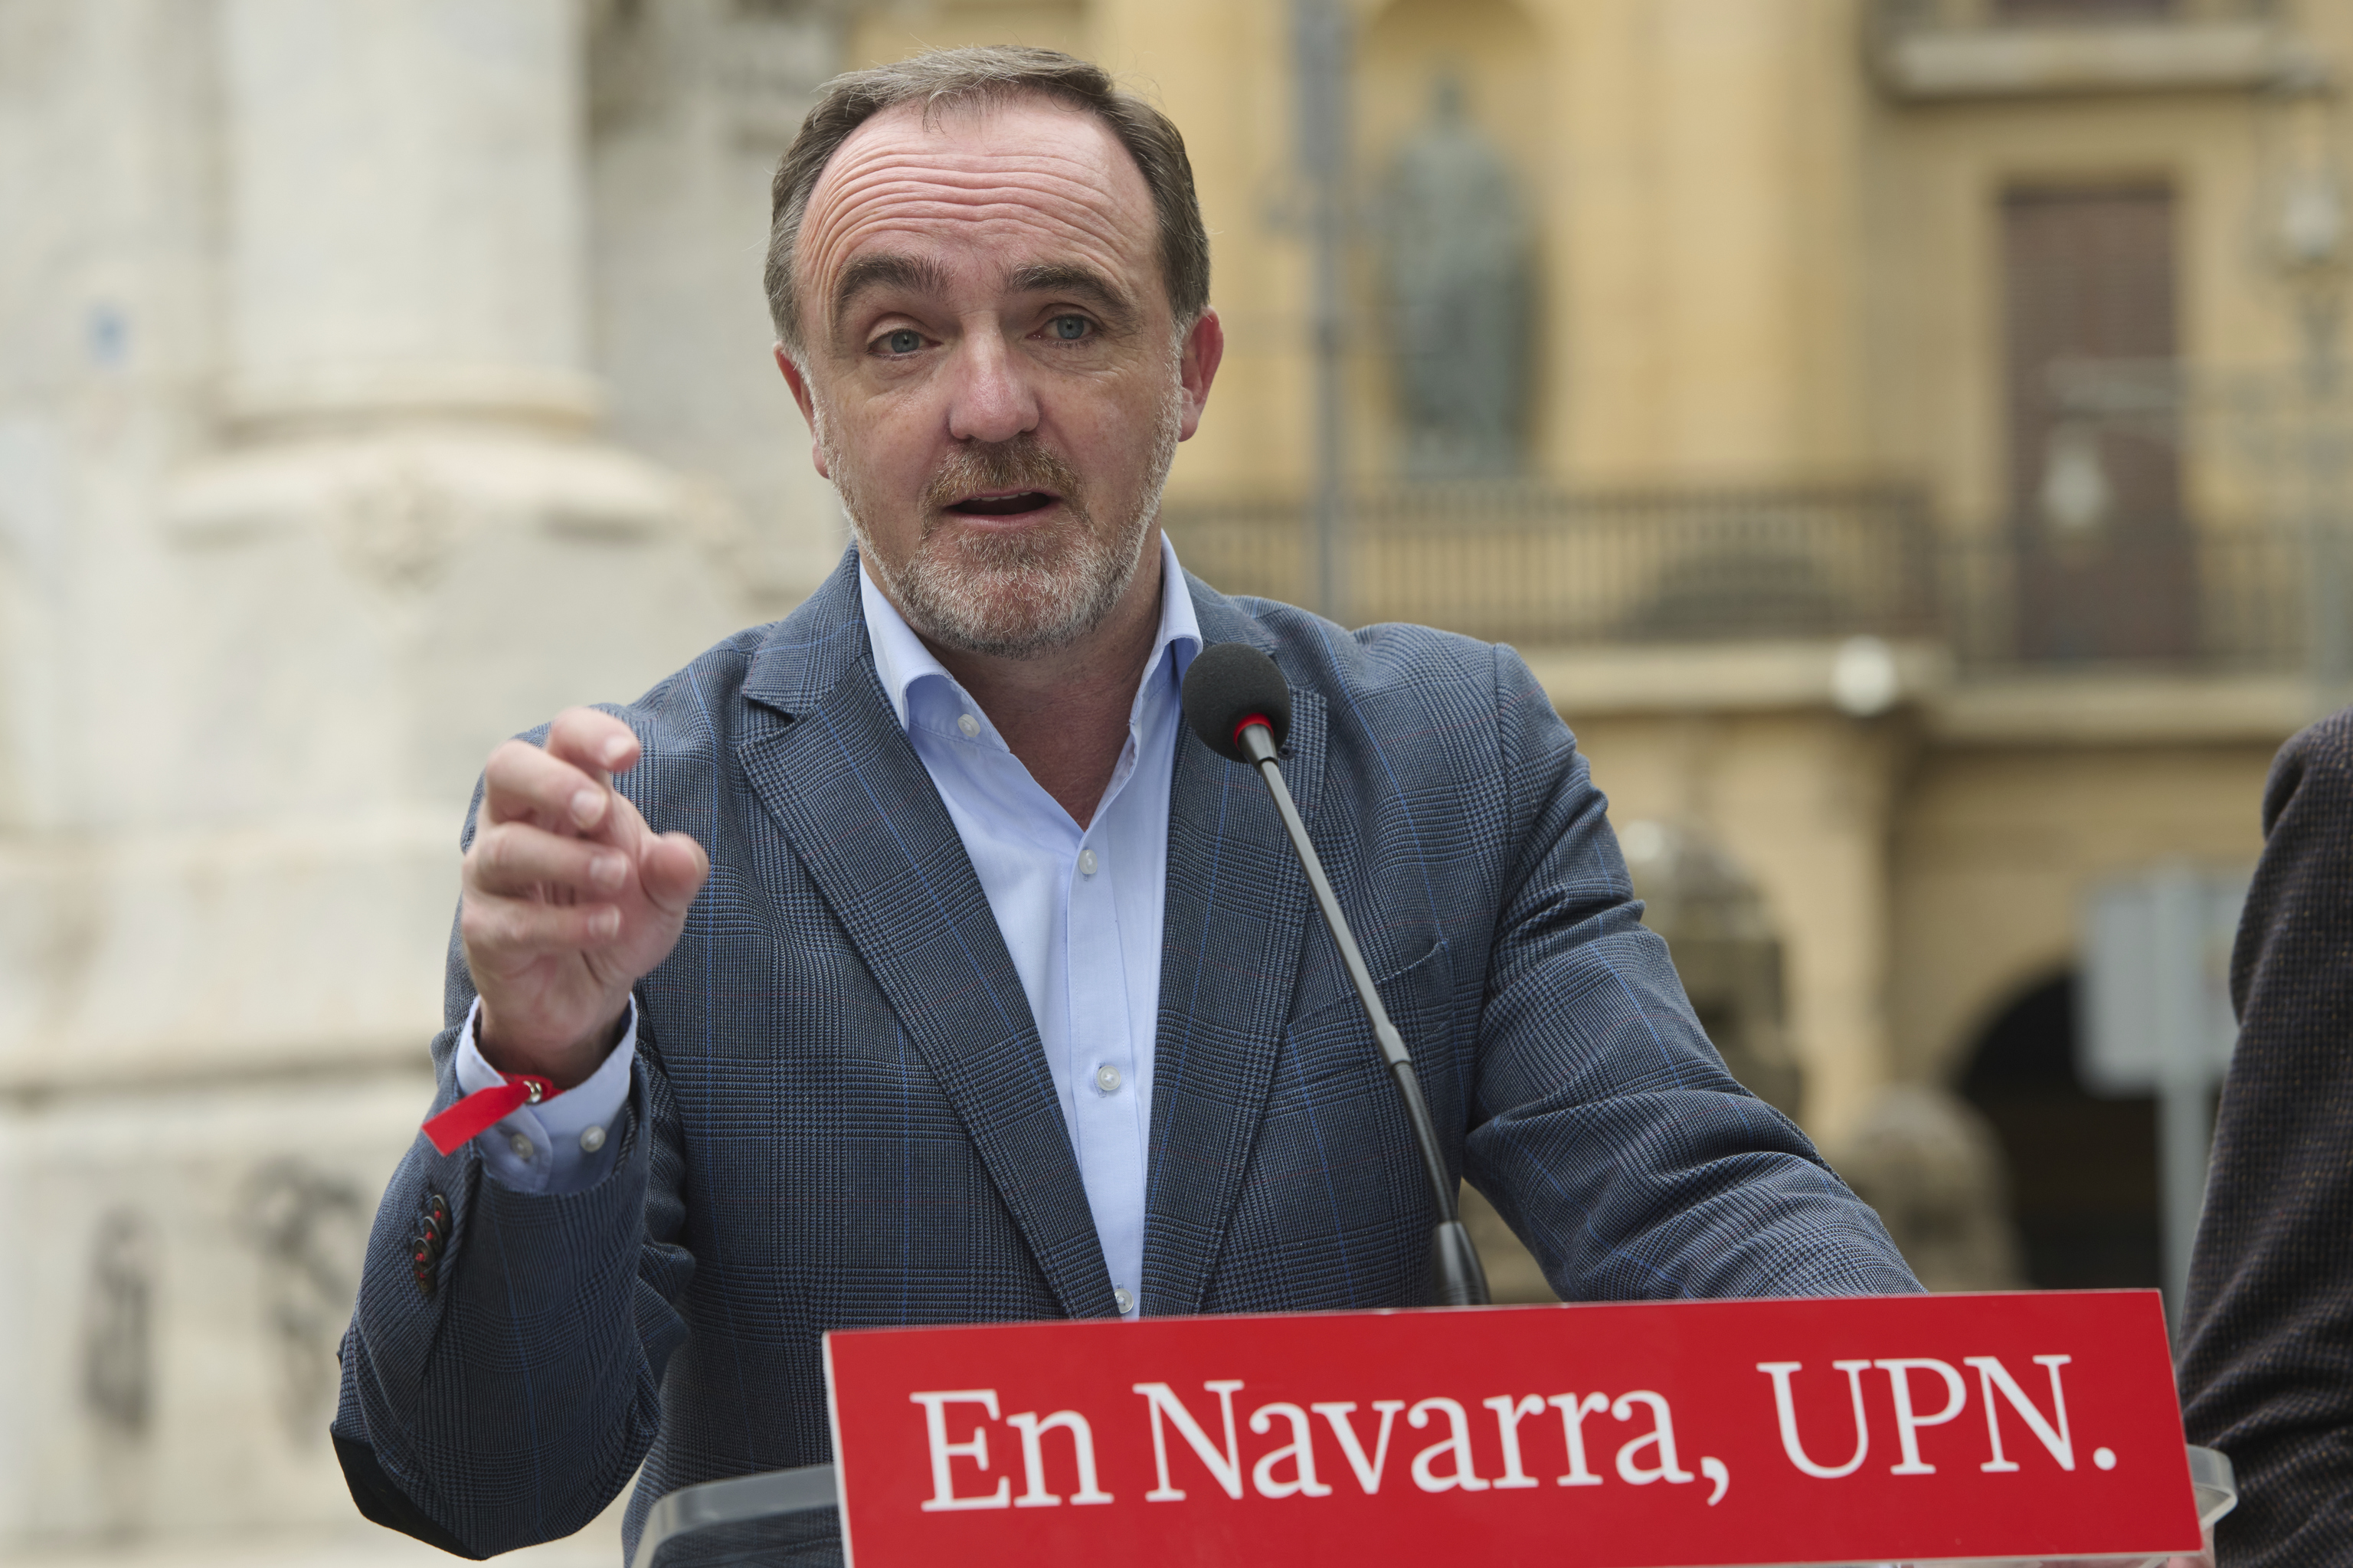 El presidente de UPN Javier Esparza durante un acto electoral junto al monumento de los Fueros en Pamplona.